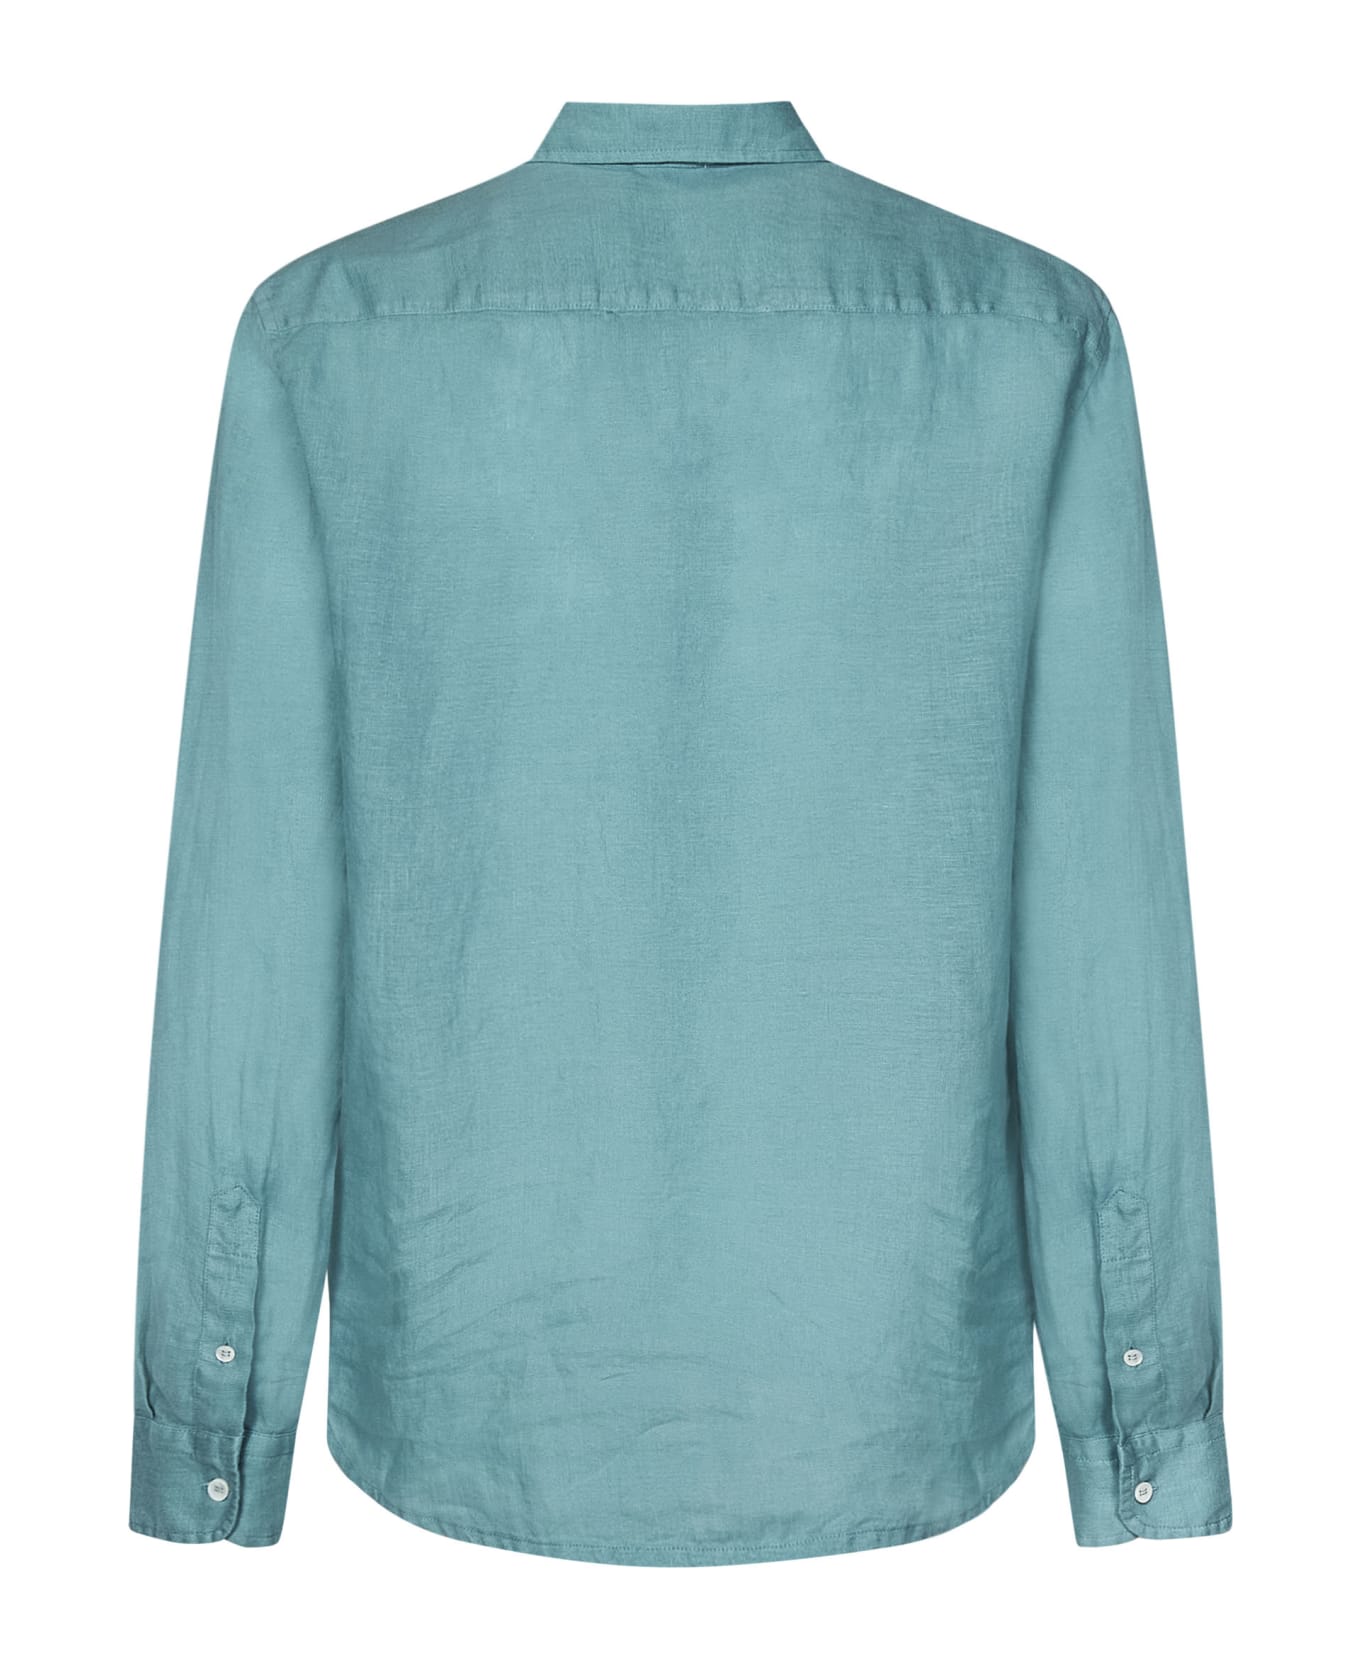 Malo Shirt - Turquoise